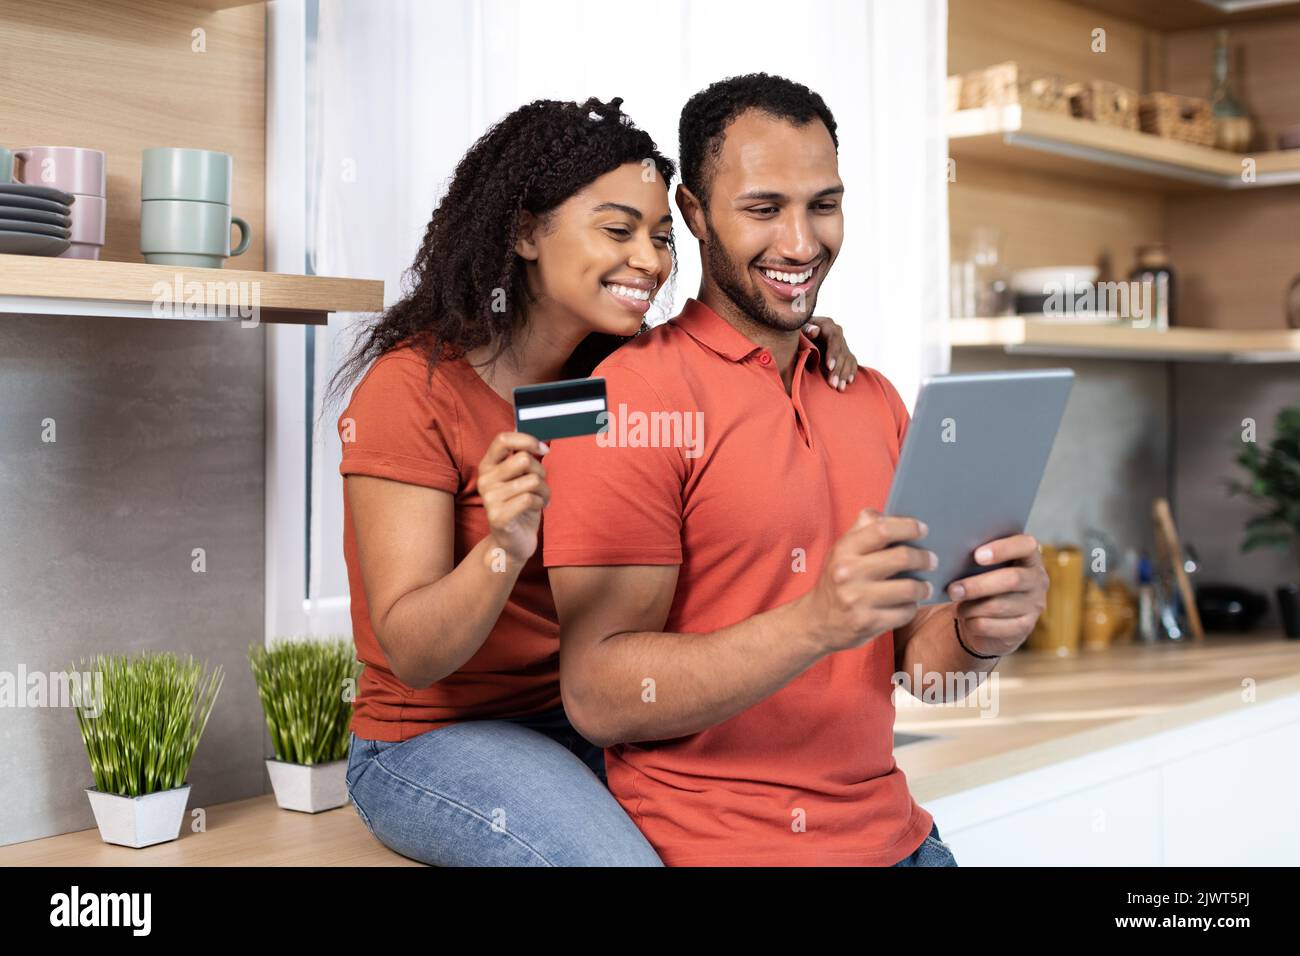 Lächelnder junger afroamerikanischer Mann und Frau in gleichen T-Shirts verwenden Kreditkarte und Tablet für Online-Shopping Stockfoto